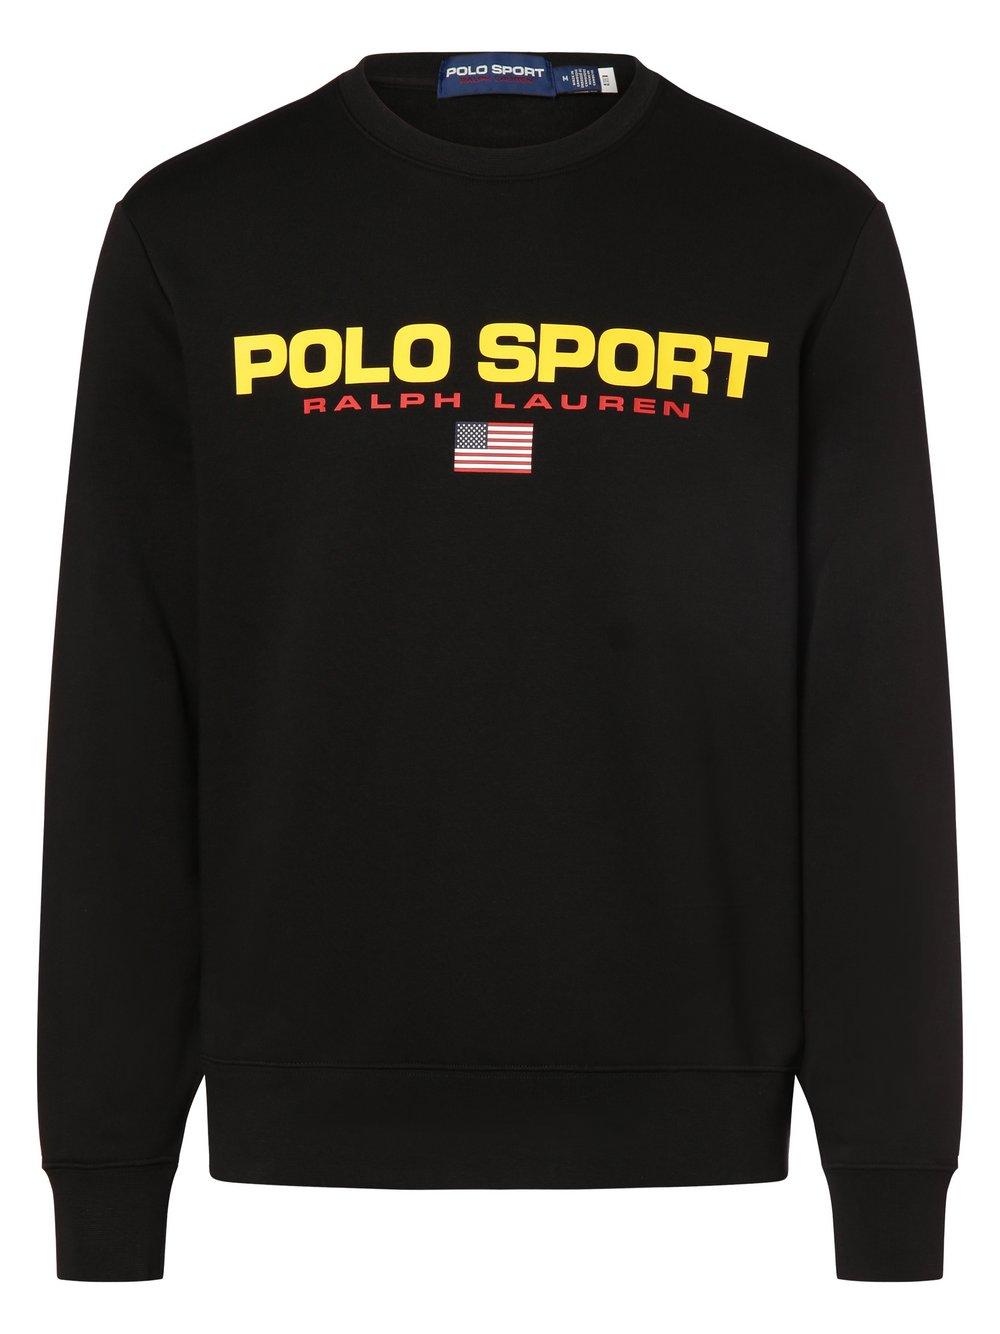 Polo Sport Sweatshirt Herren Baumwolle Rundhals bedruckt, schwarz von Polo Sport Ralph Lauren